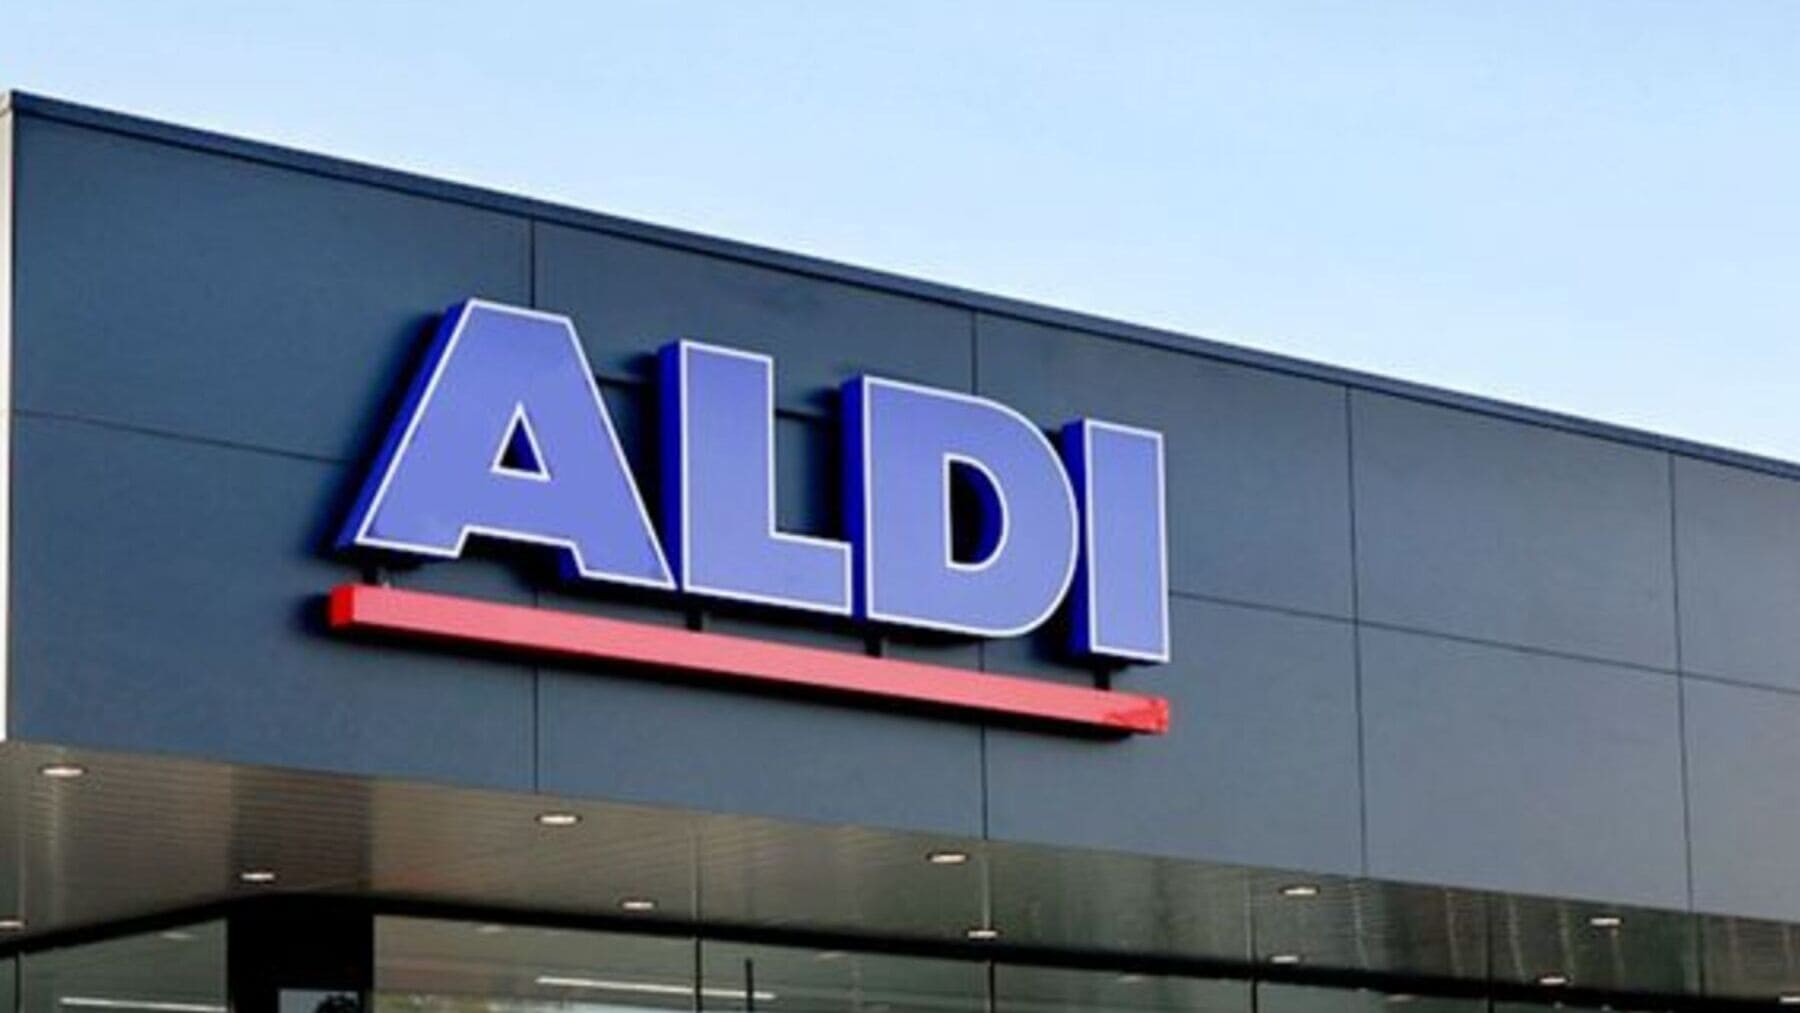 El curioso motivo por el que los supermercados Aldi y Lidl se parecen tanto